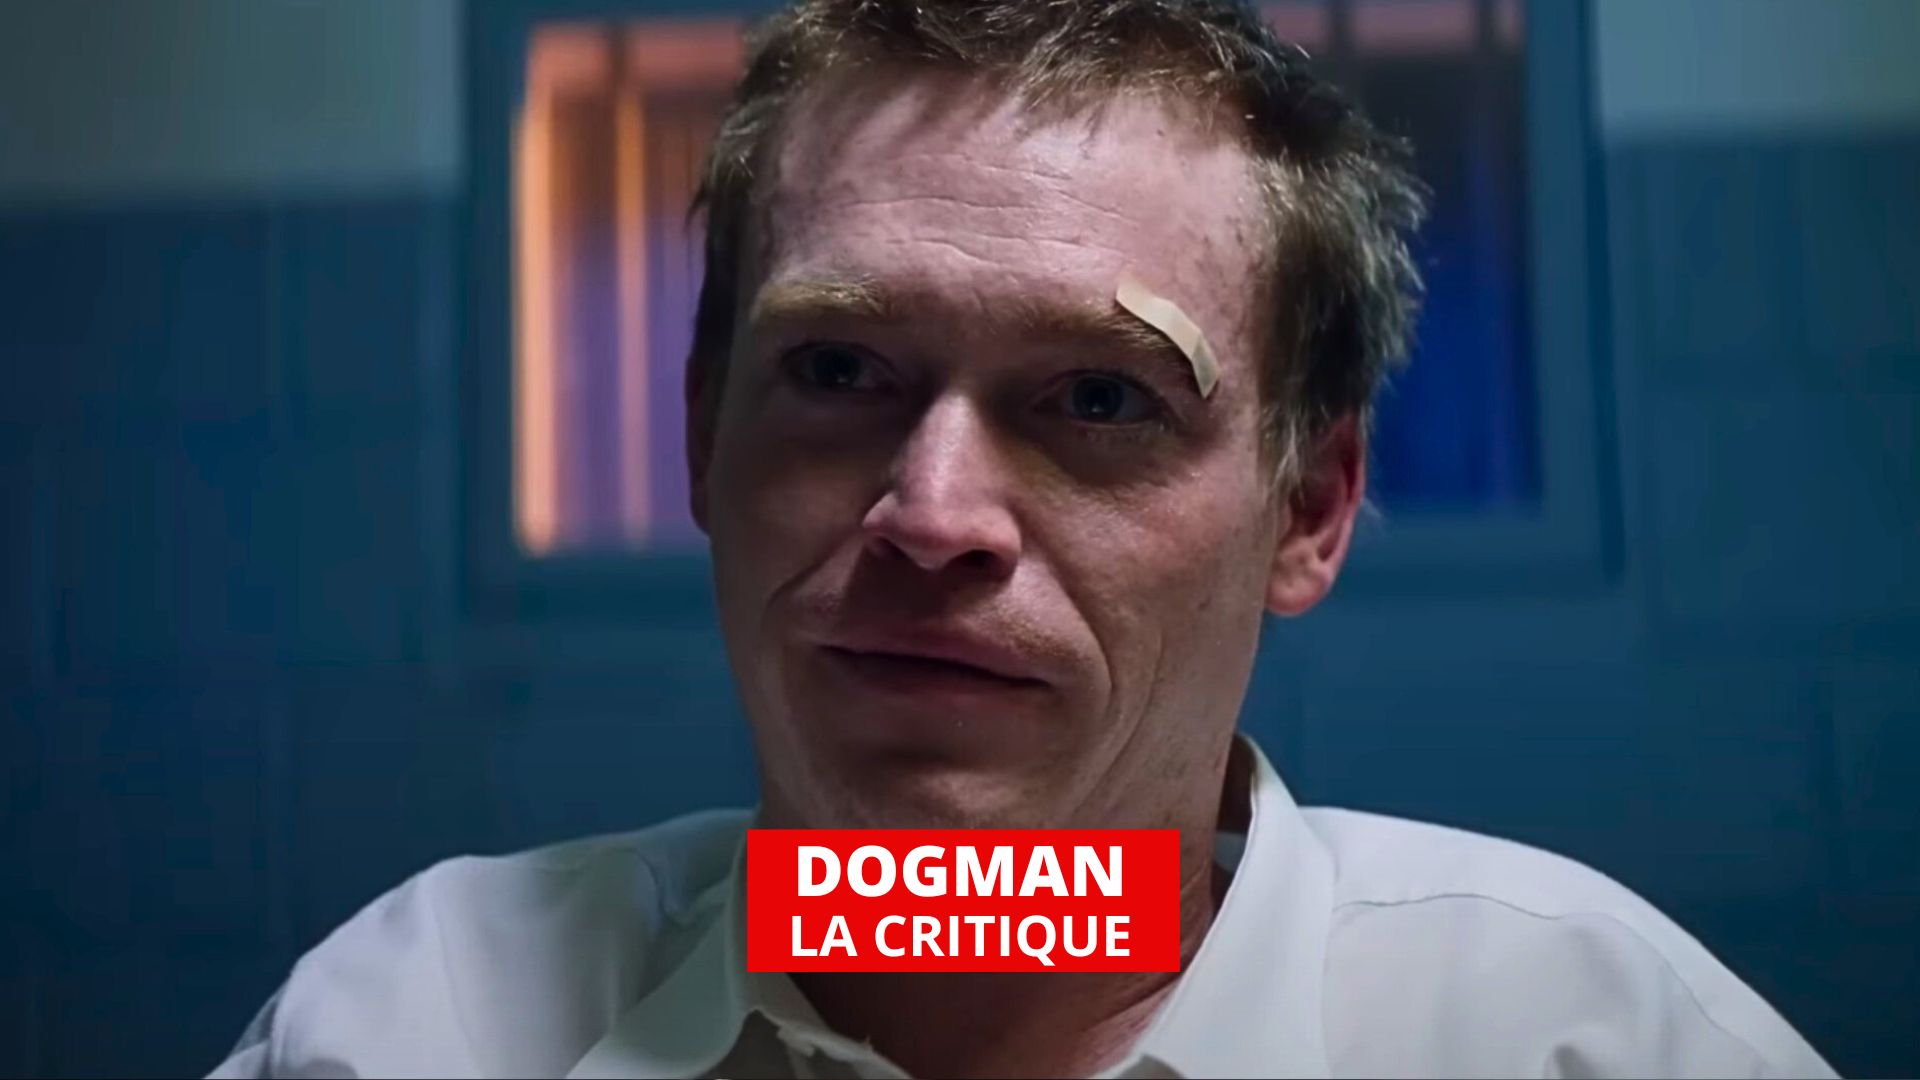 DogMan : un Luc Besson sombre mais oubliable